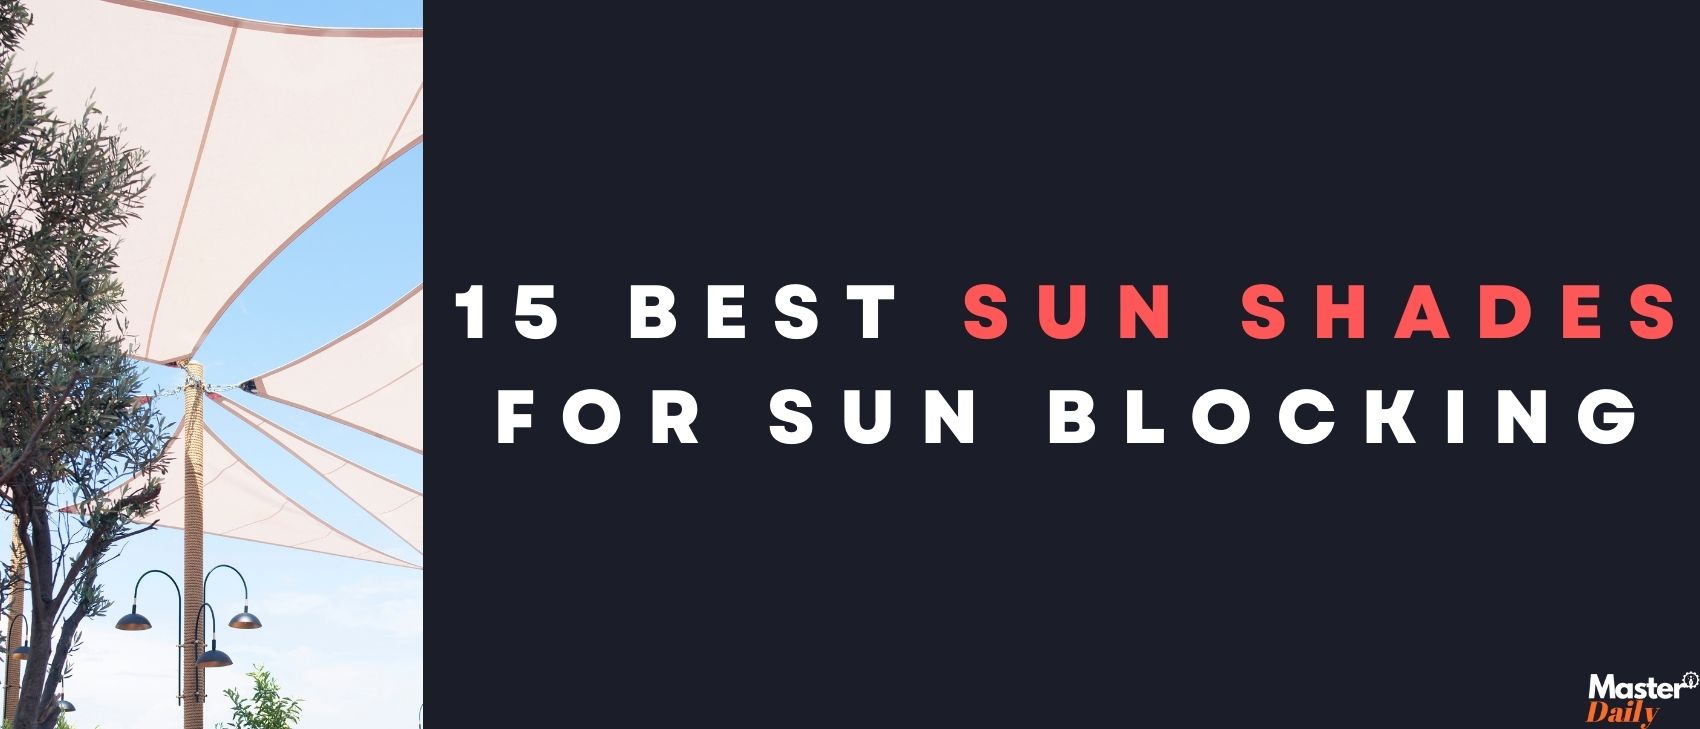 Best Sun Shades For Sun Blocking